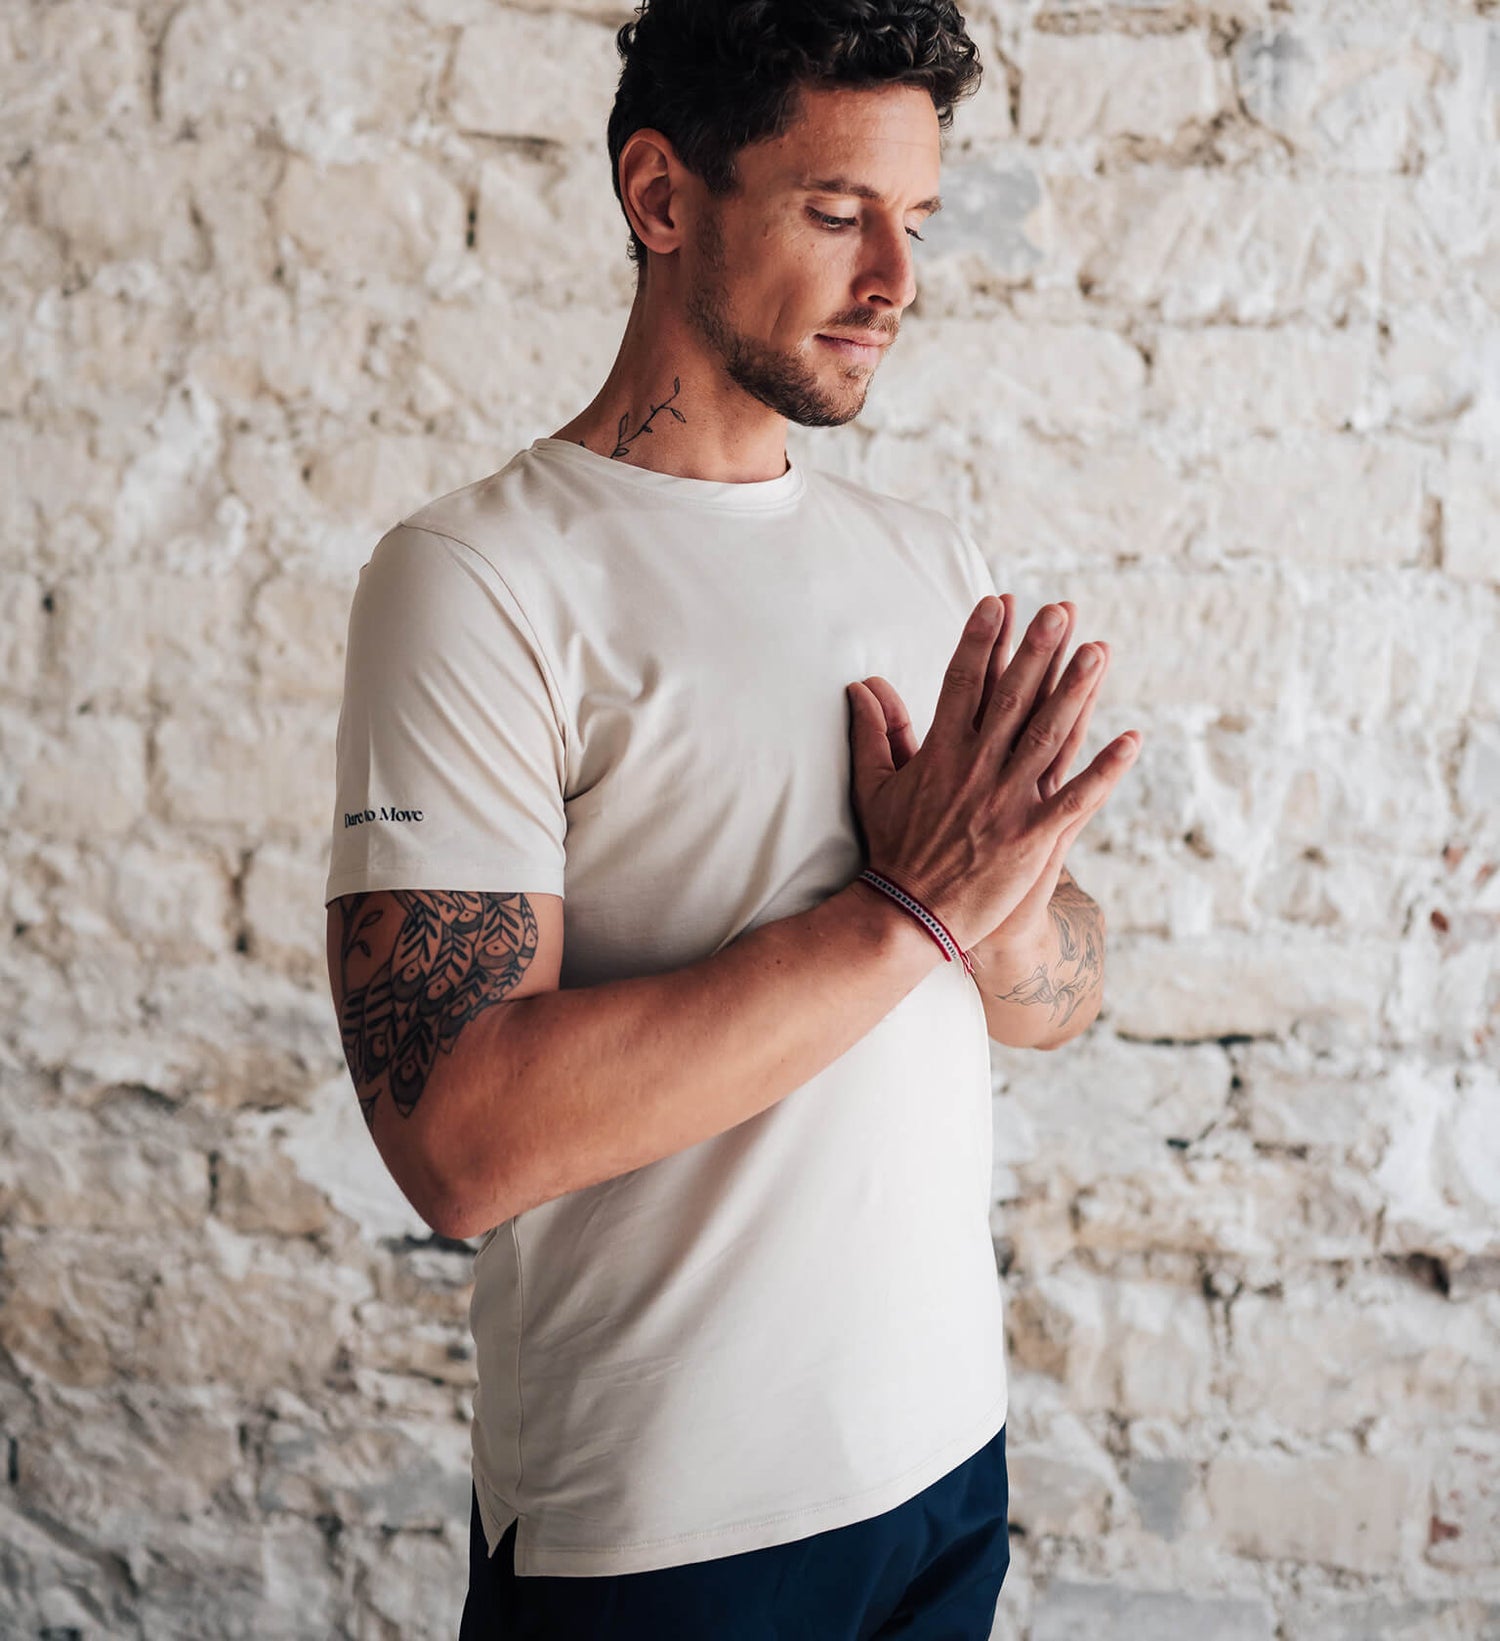 Comment Choisir sa Tenue de Yoga Homme ?